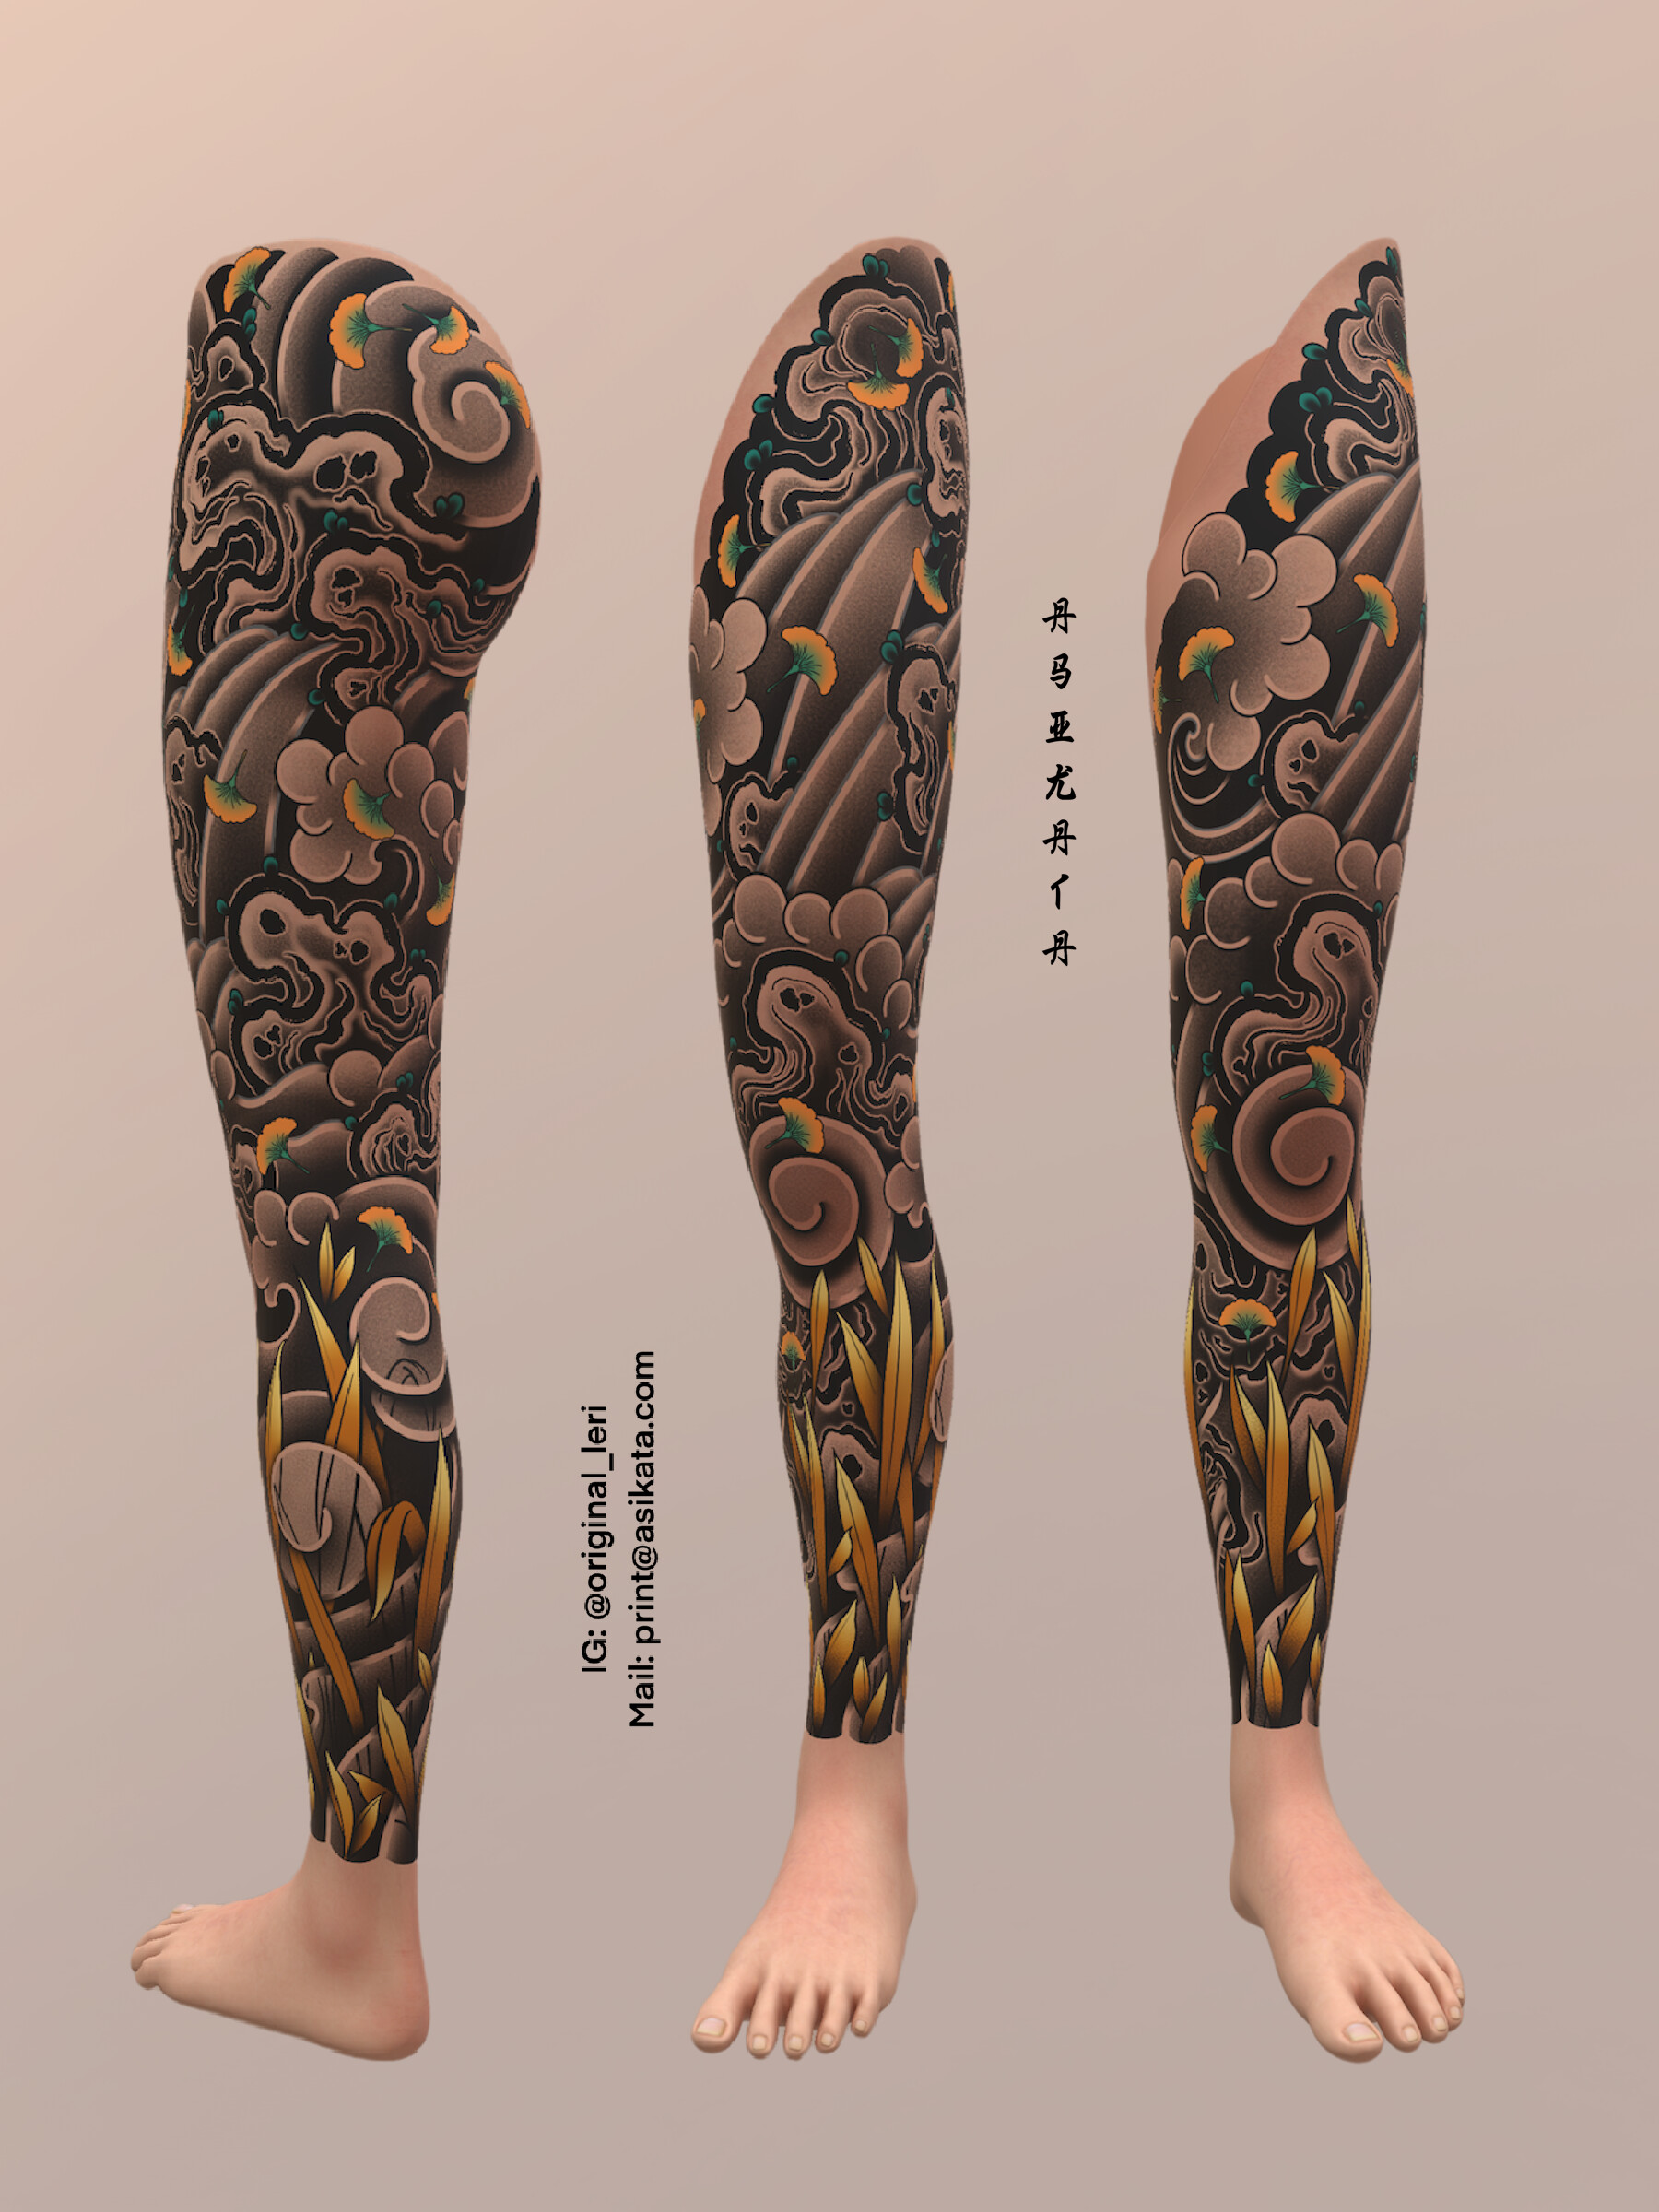 Wildflower Thigh Tattoo Designs for Women | TikTok